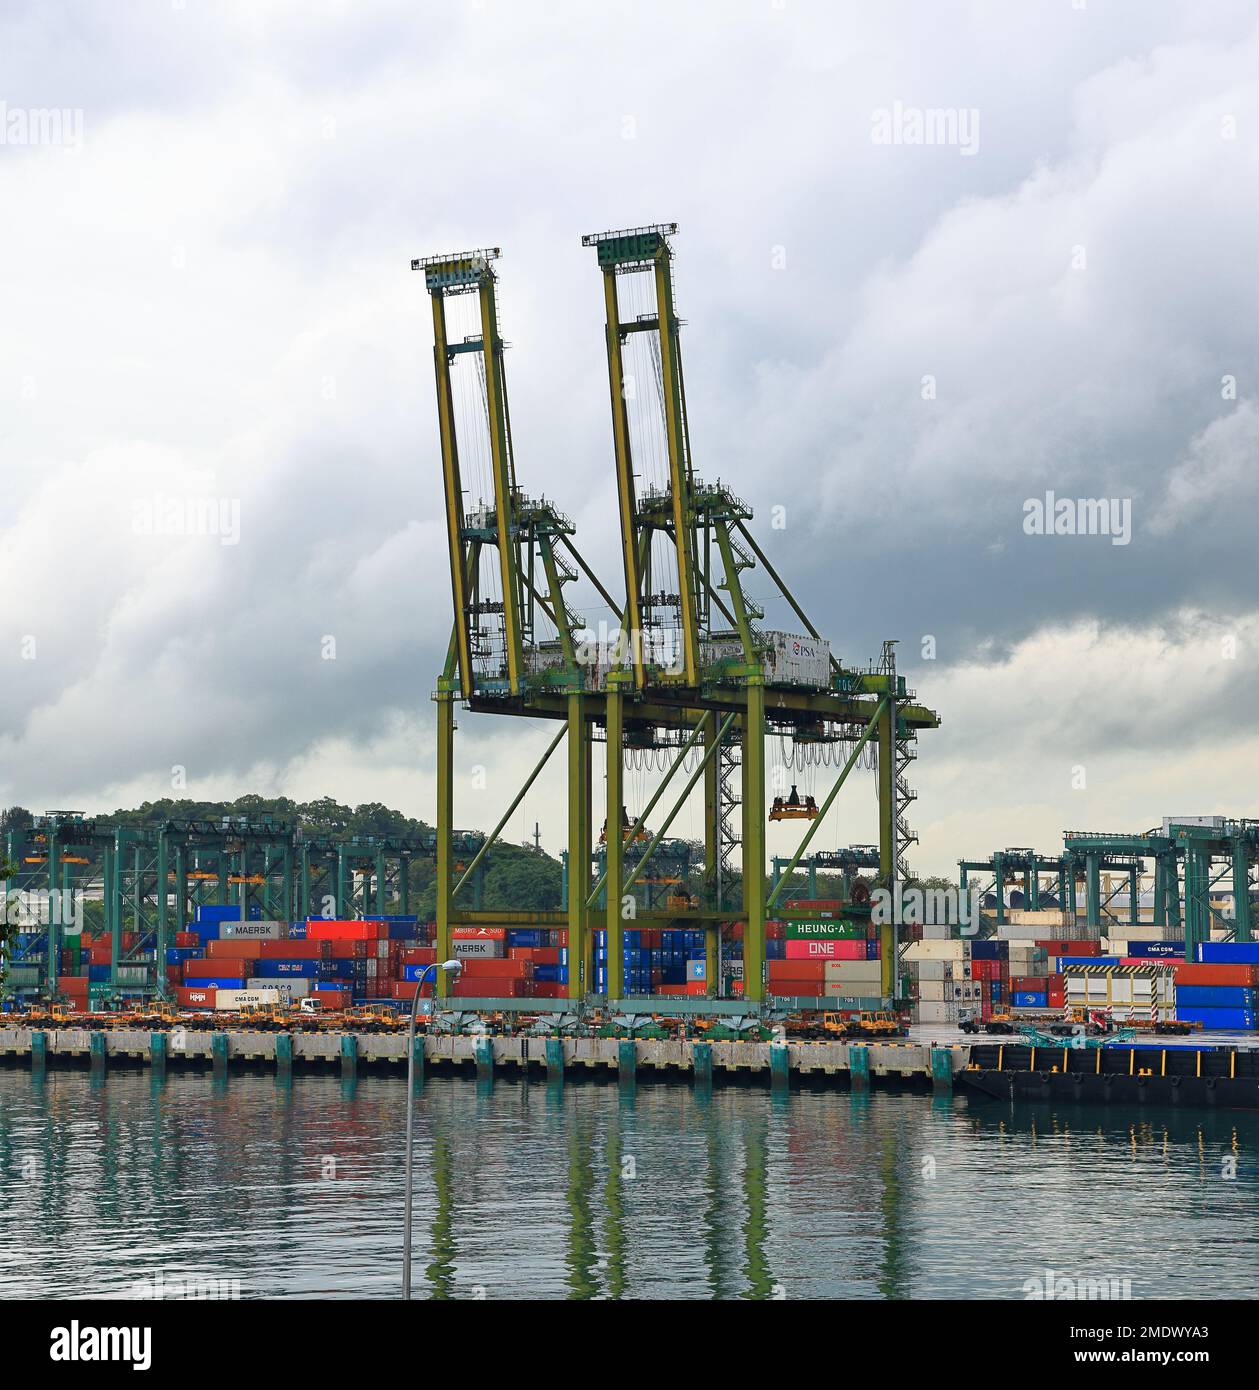 Containerterminal für die Schifffahrt in Singapur, das asiatische Modernisierungsprogramm für den Hafen und den Welthandel Stockfoto